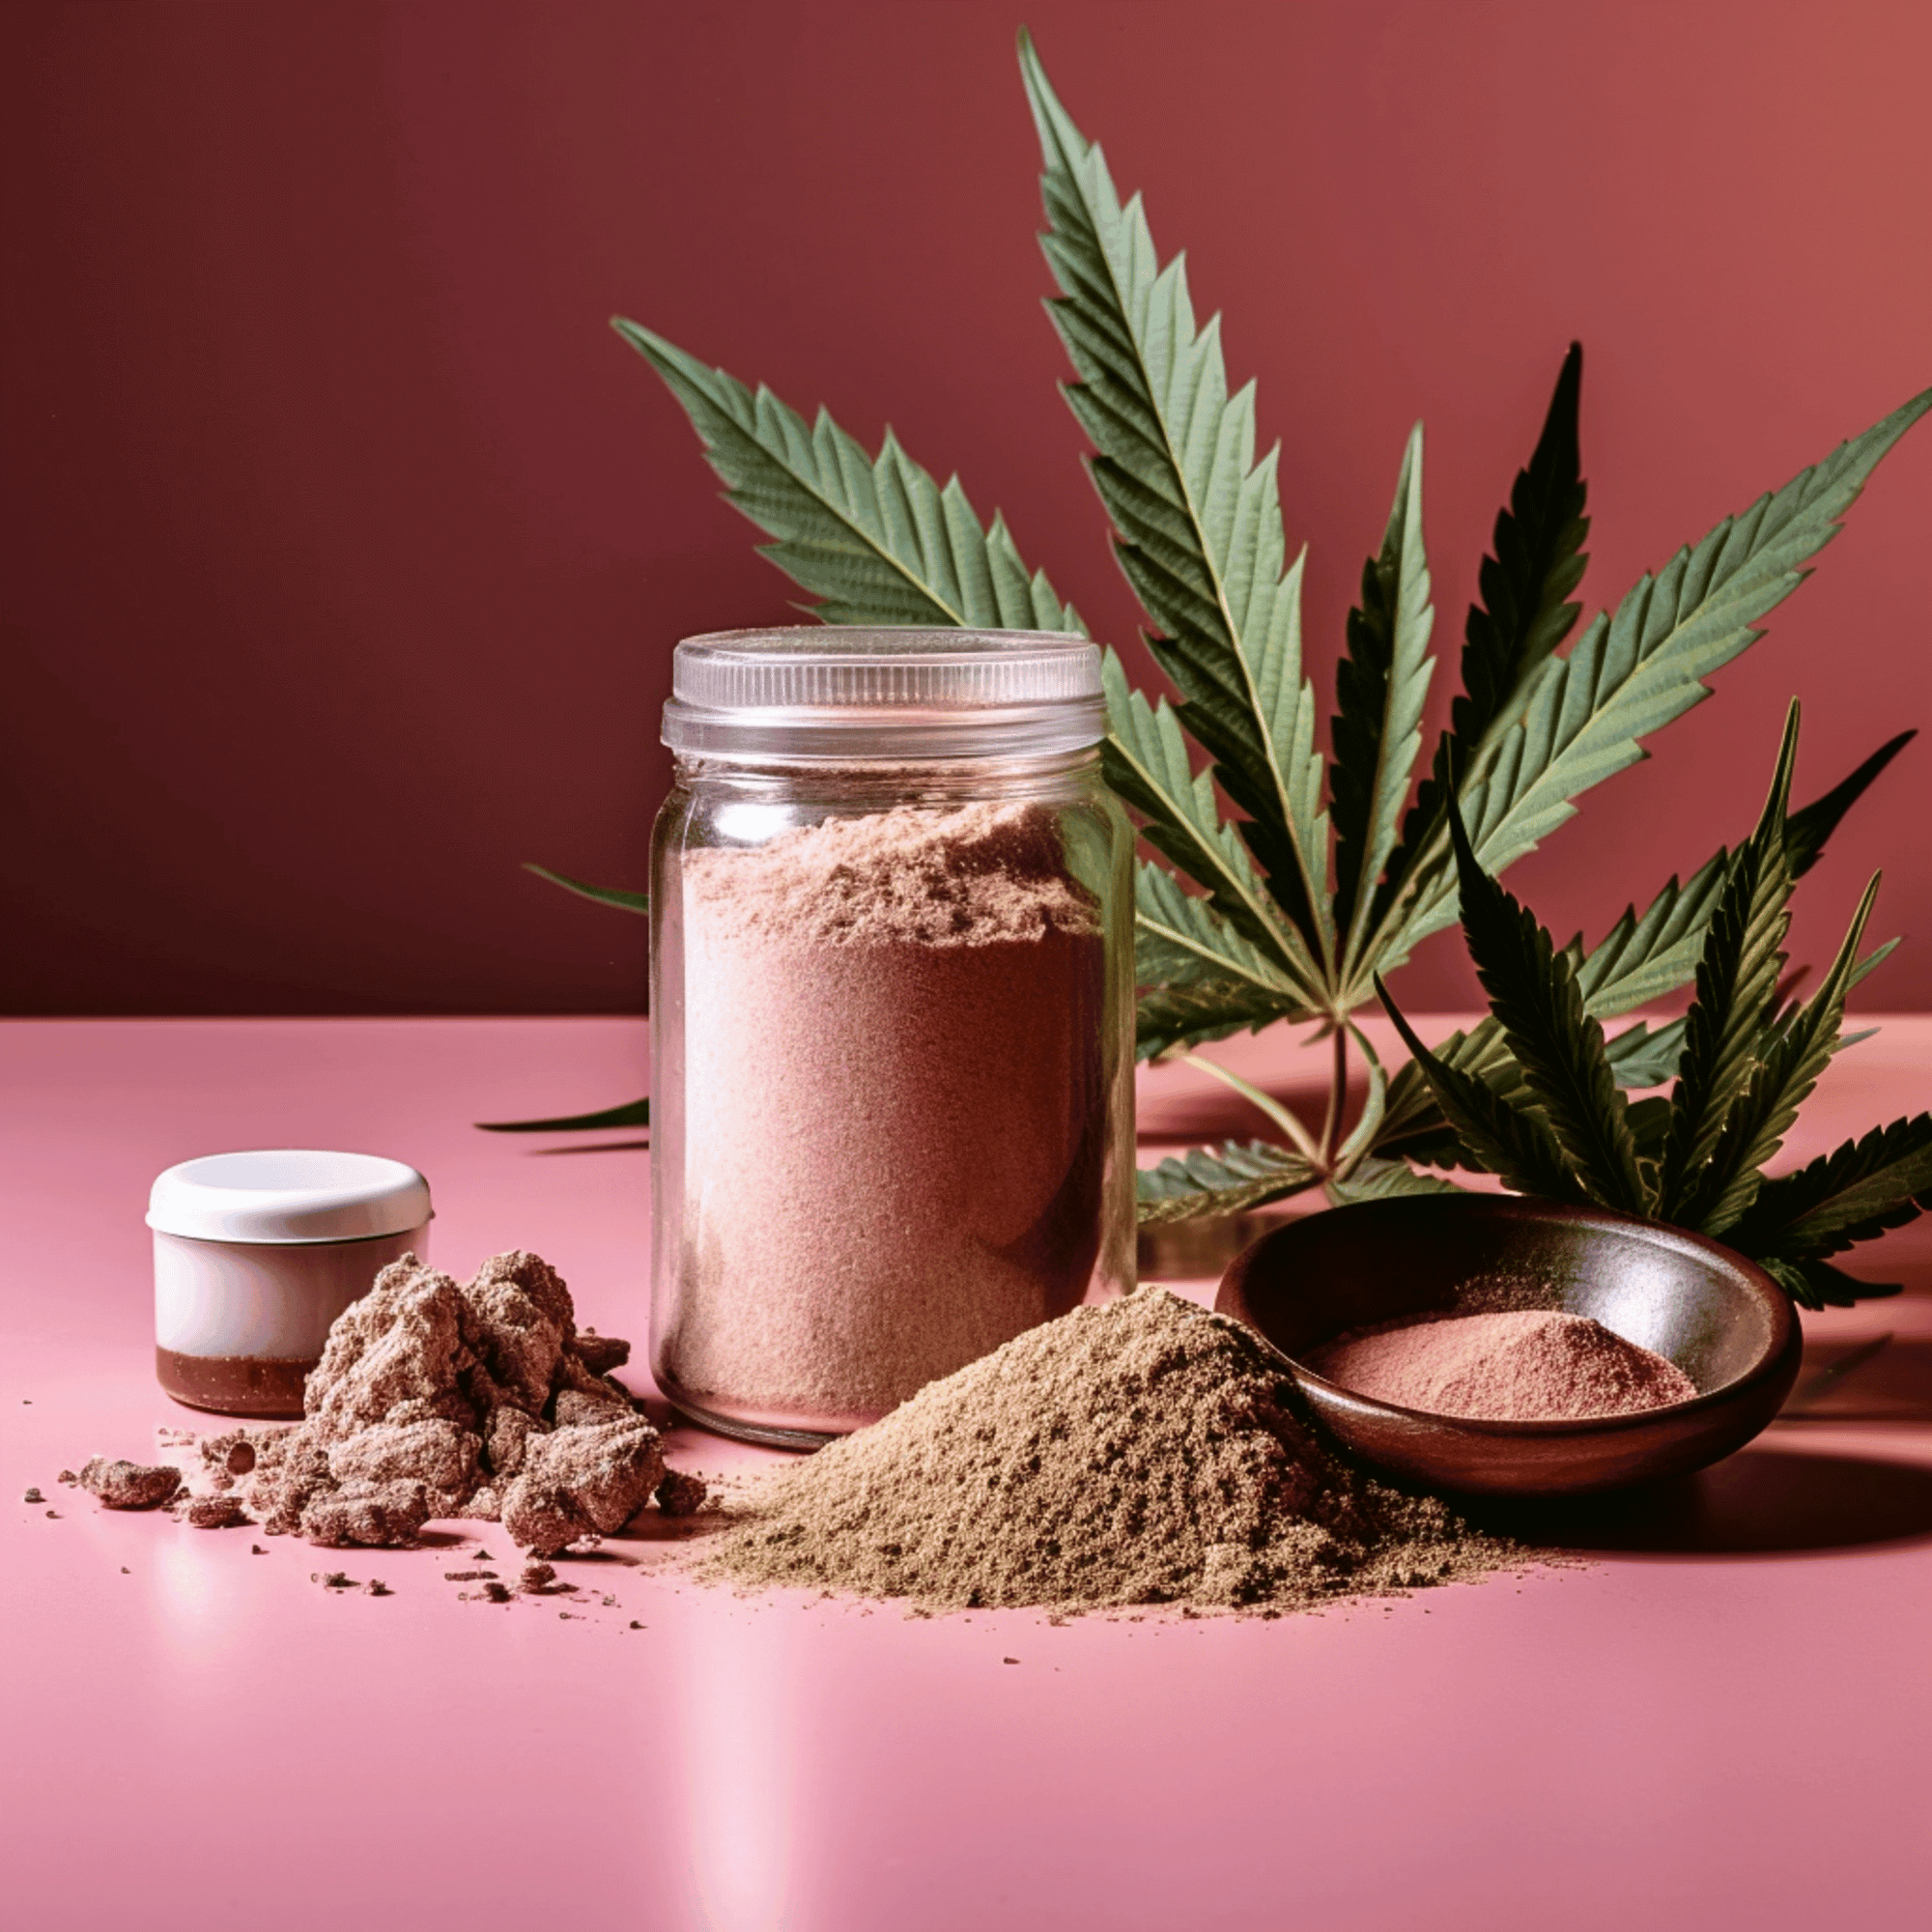 THC Powder In A Jar 